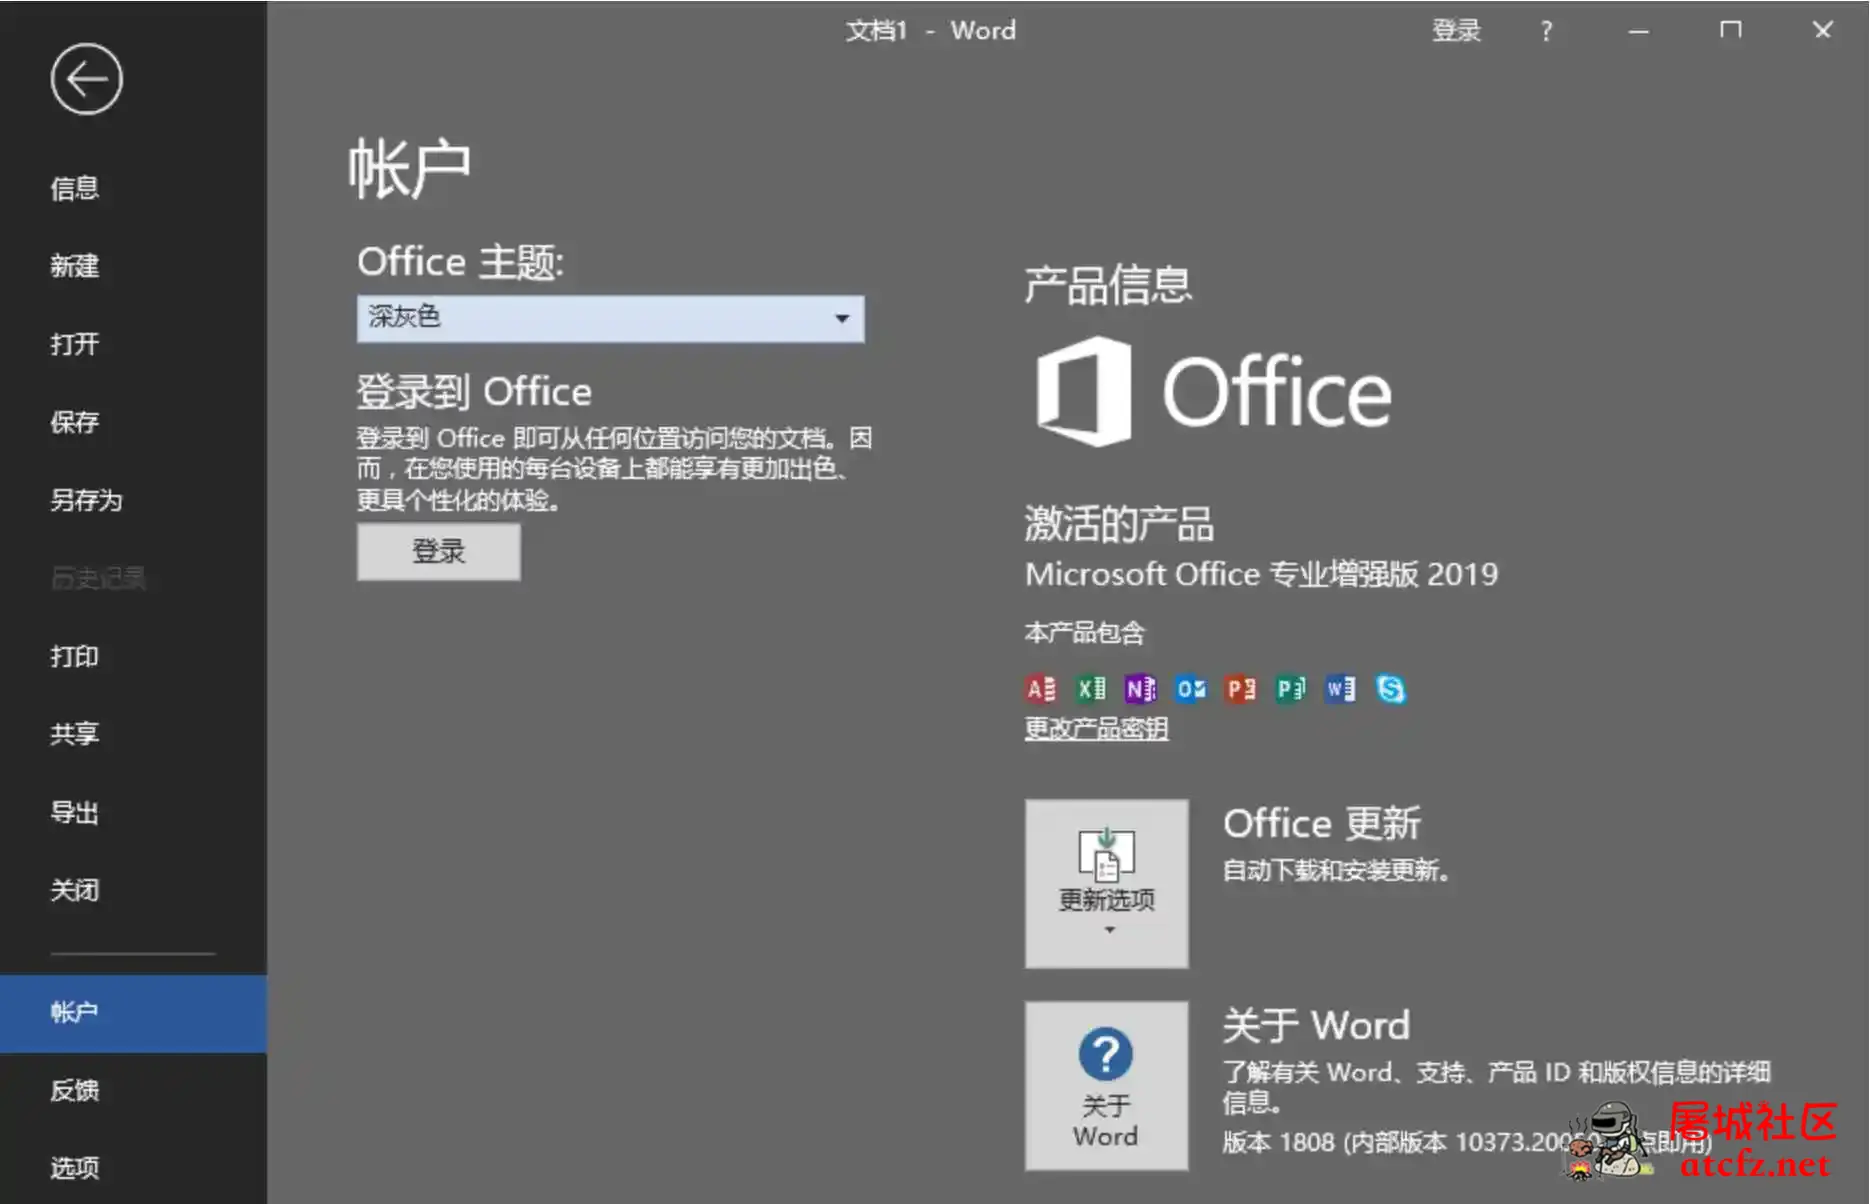 微软Office2019批量授权版批量授权商业版工具 屠城辅助网www.tcfz1.com703